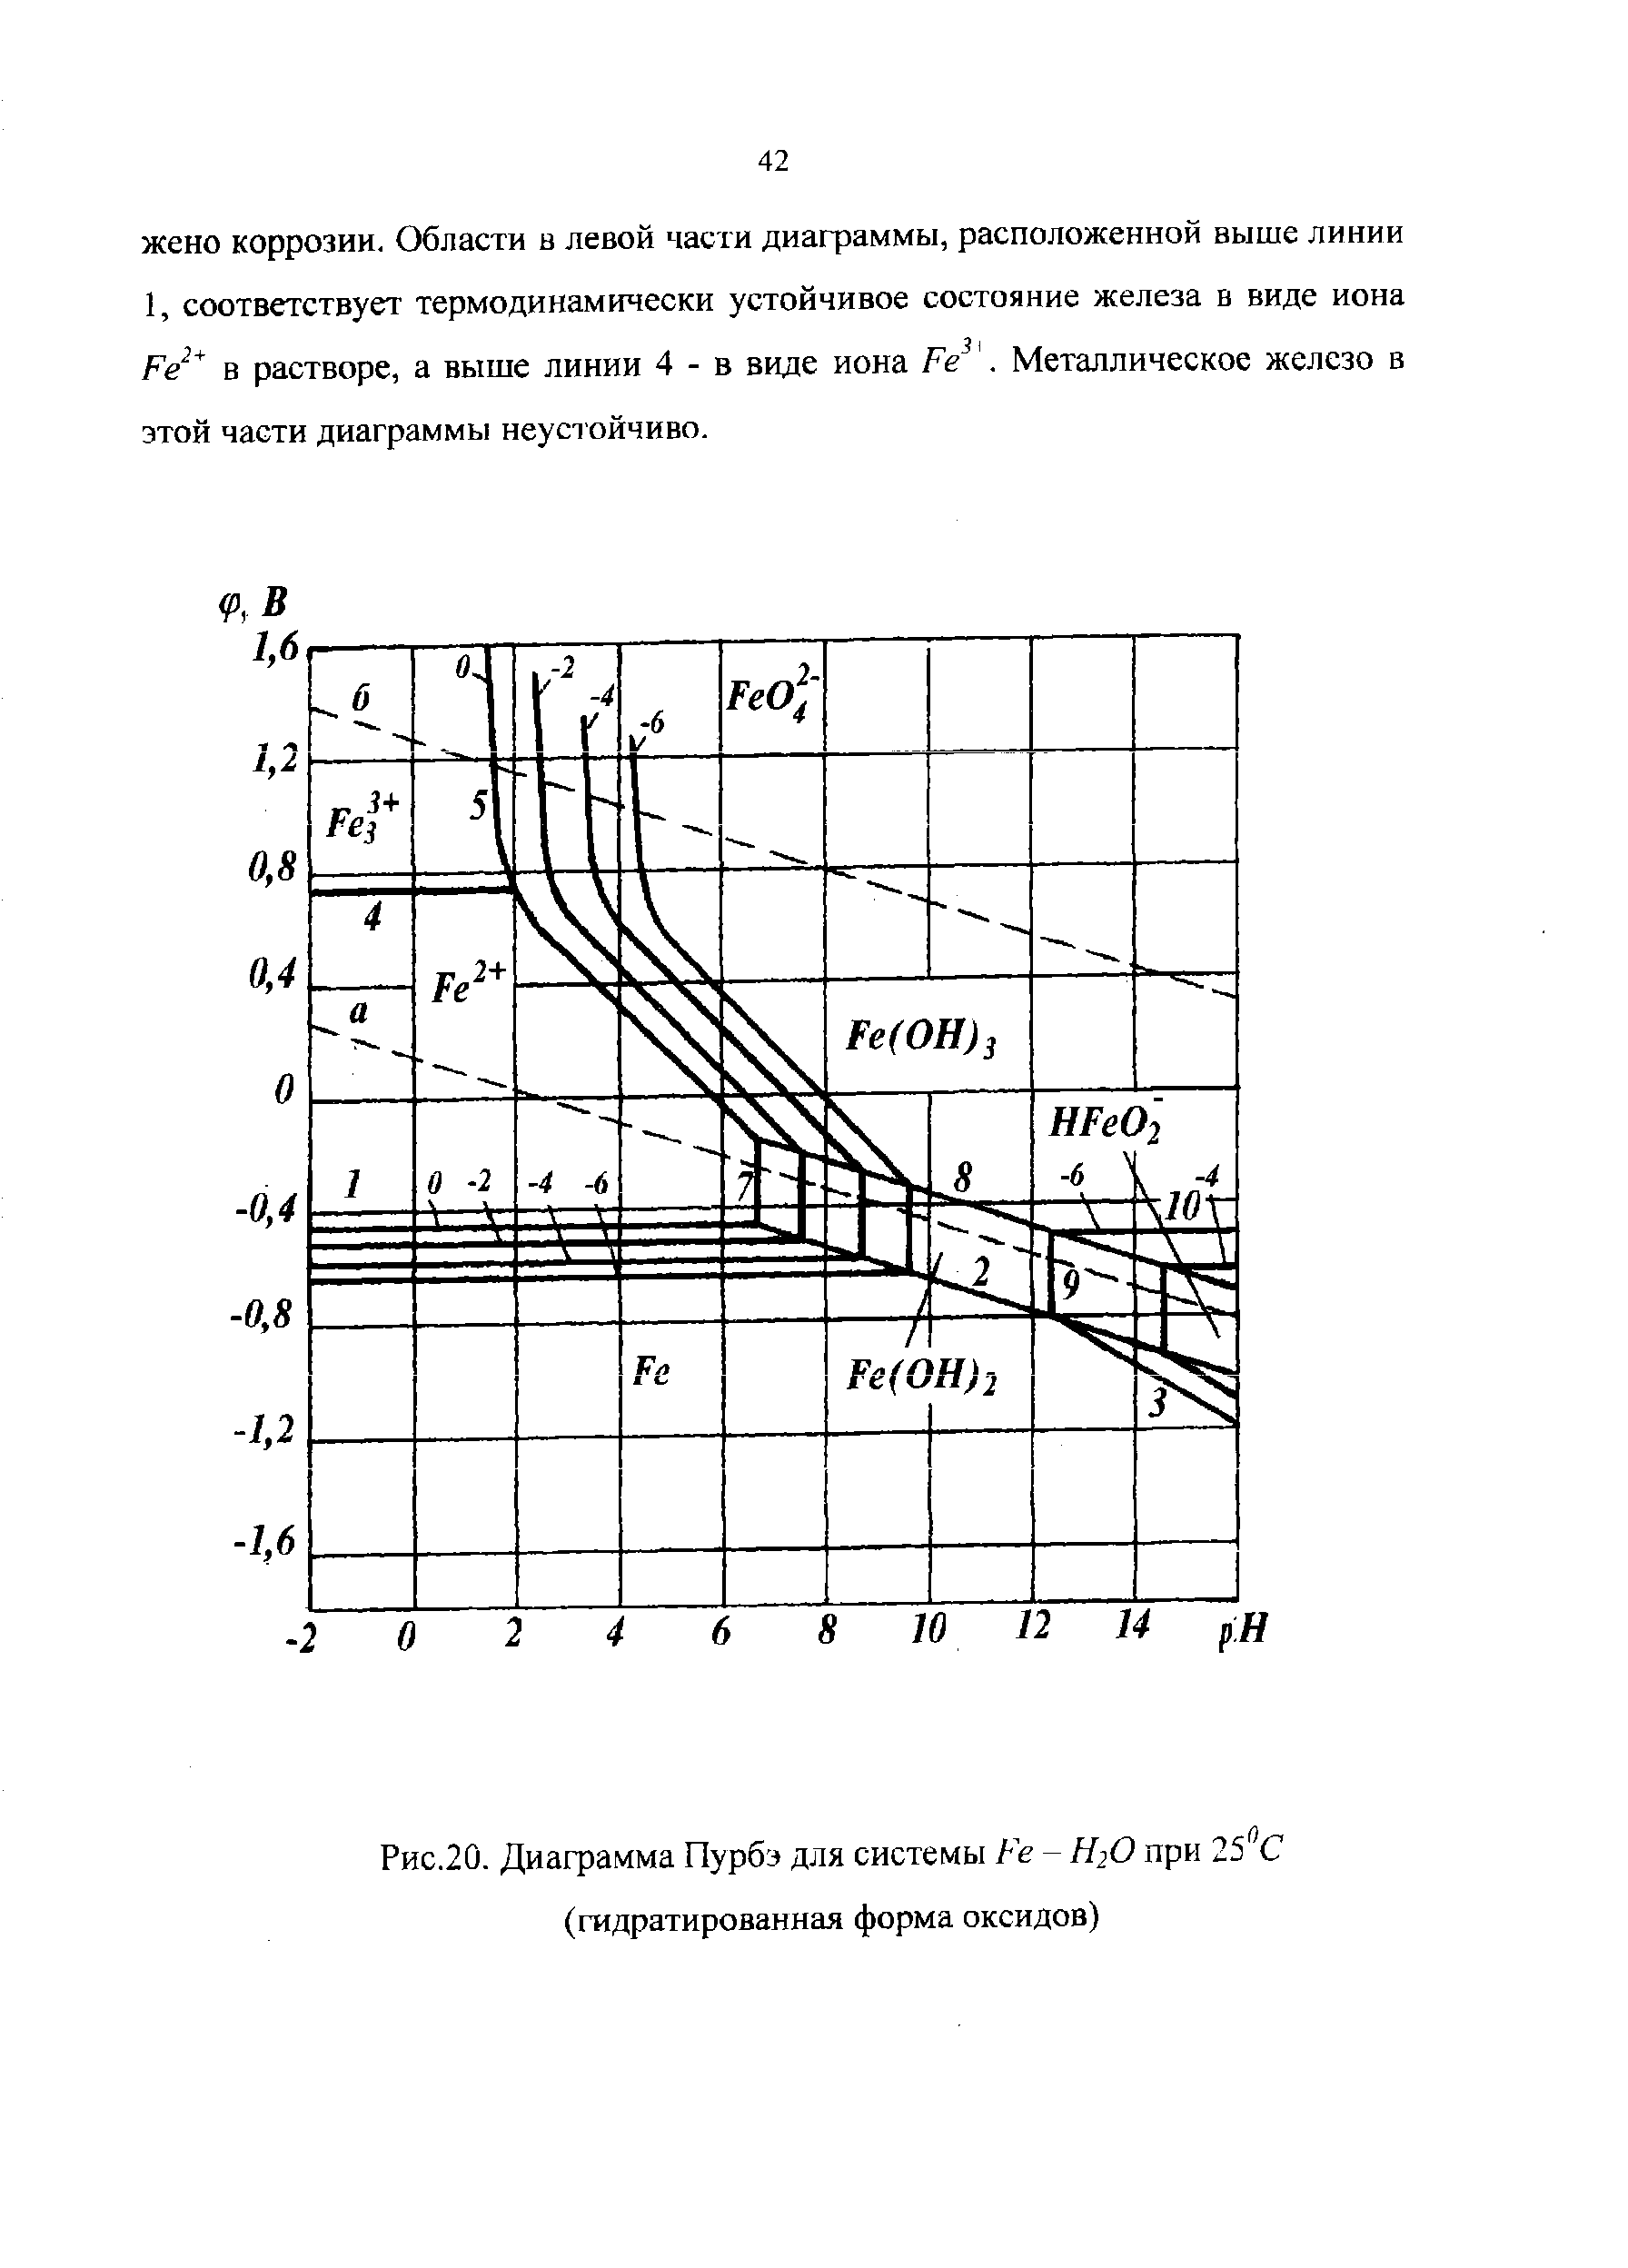 Рис.20. Диаграмма Пурбэ для системы Fe - Н2О при 25 С (гидратированная форма оксидов)
